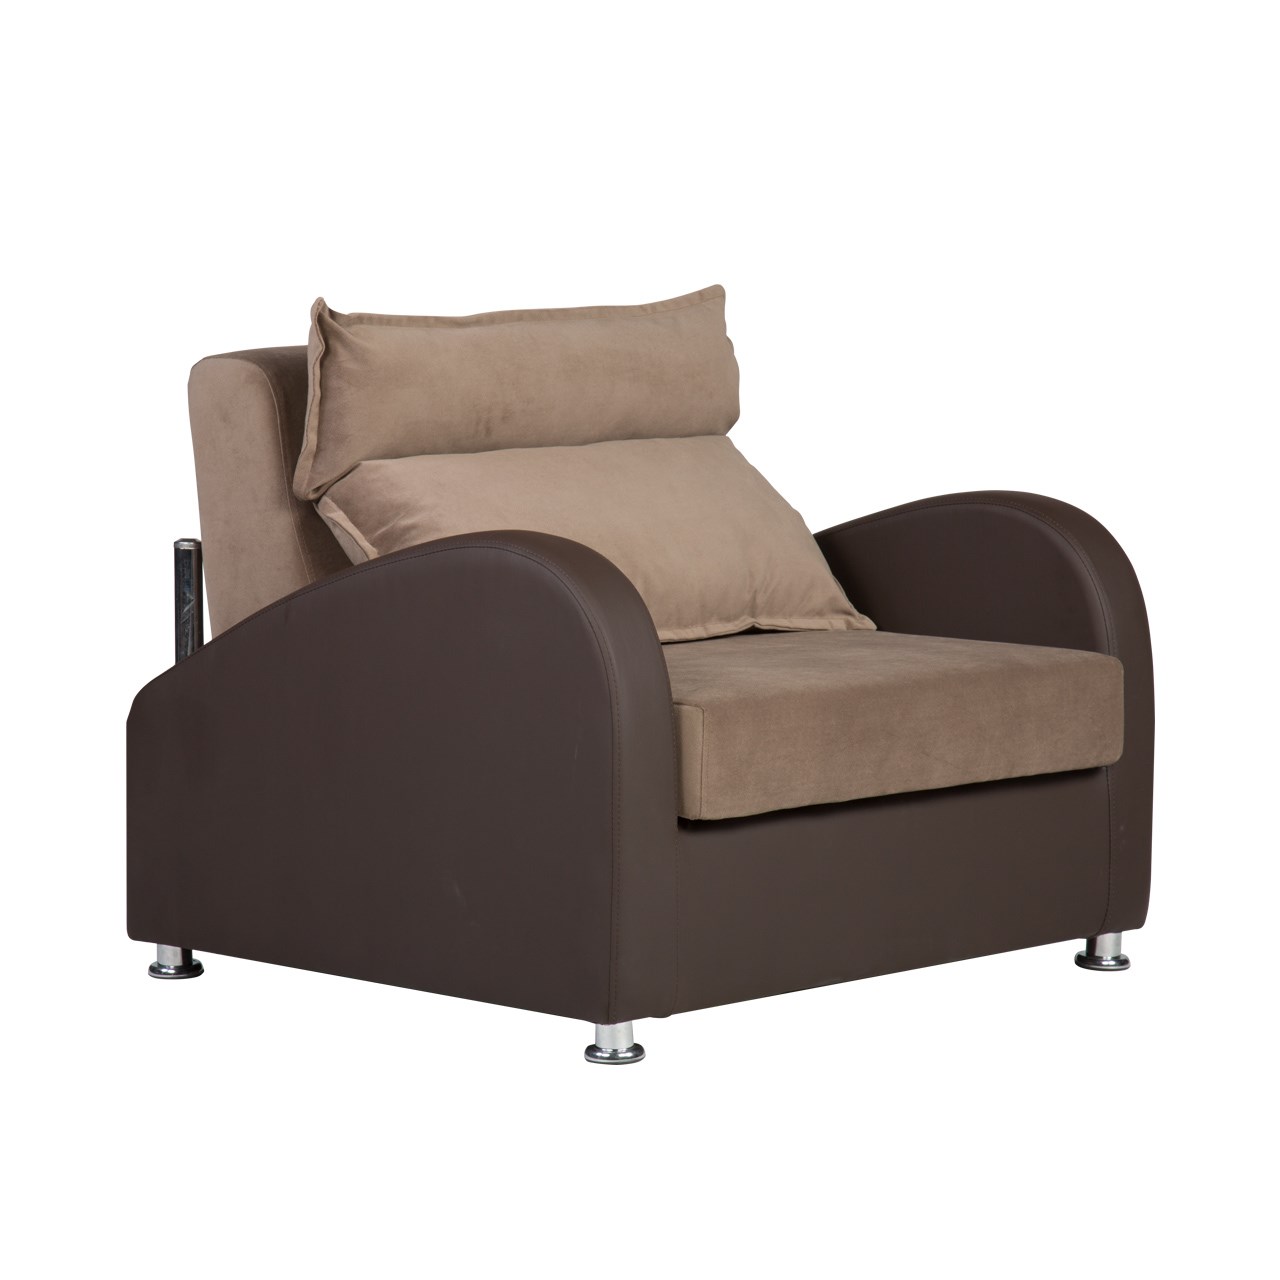 کاناپه مبل تختخواب شو ( تختخوابشو ) یک نفره آرا سوفا مدل G16